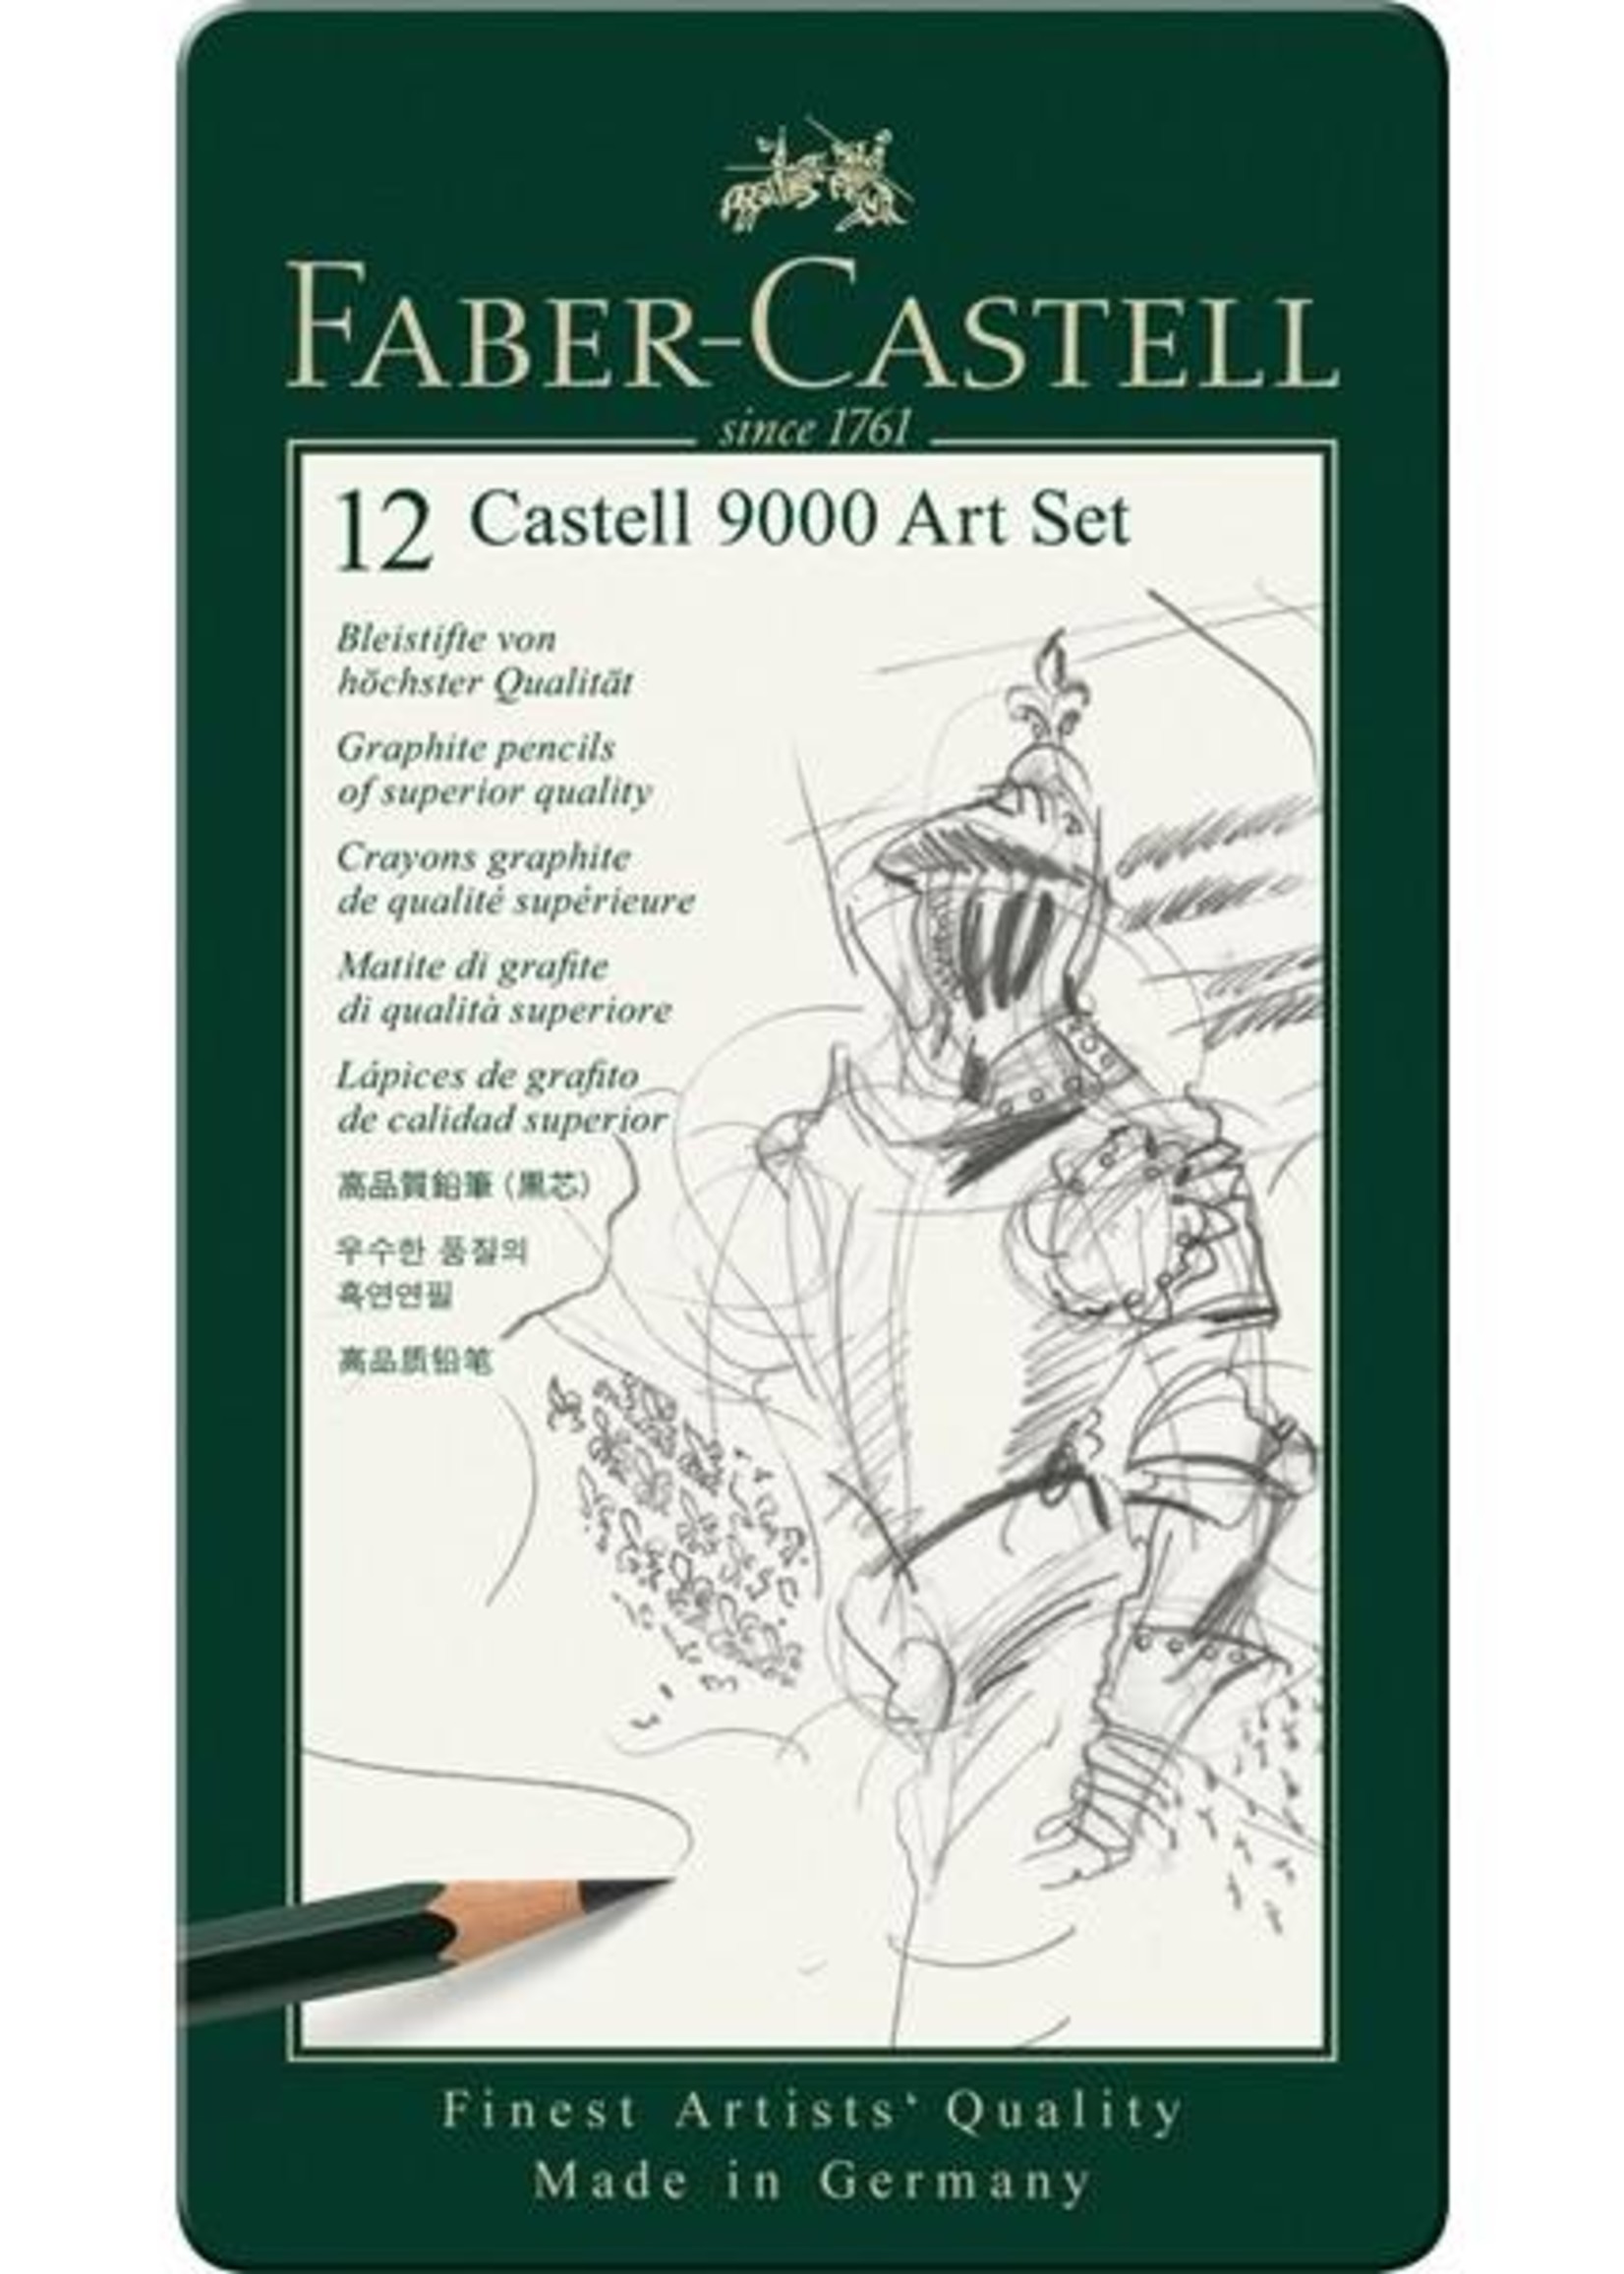 Faber-Castell Faber Castell 9000 Art Set 12 Bleistifte 8B-2H